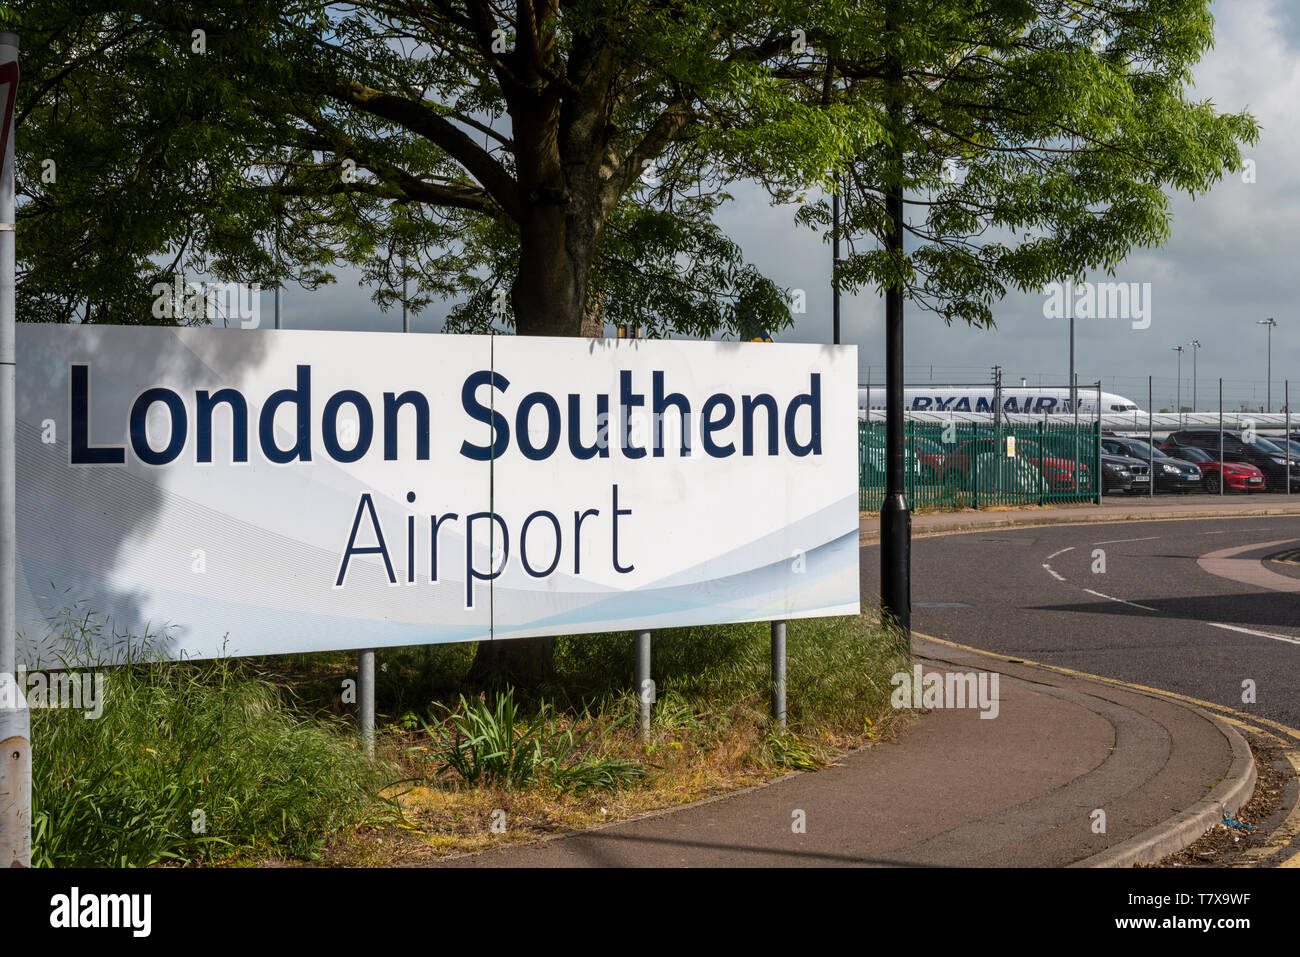 Schild zum Flughafen London Southend mit dem Flugzeug von Ryanair dahinter. Southend on Sea, Essex, Großbritannien. Parkplatz. Autos. Parken Stockfoto